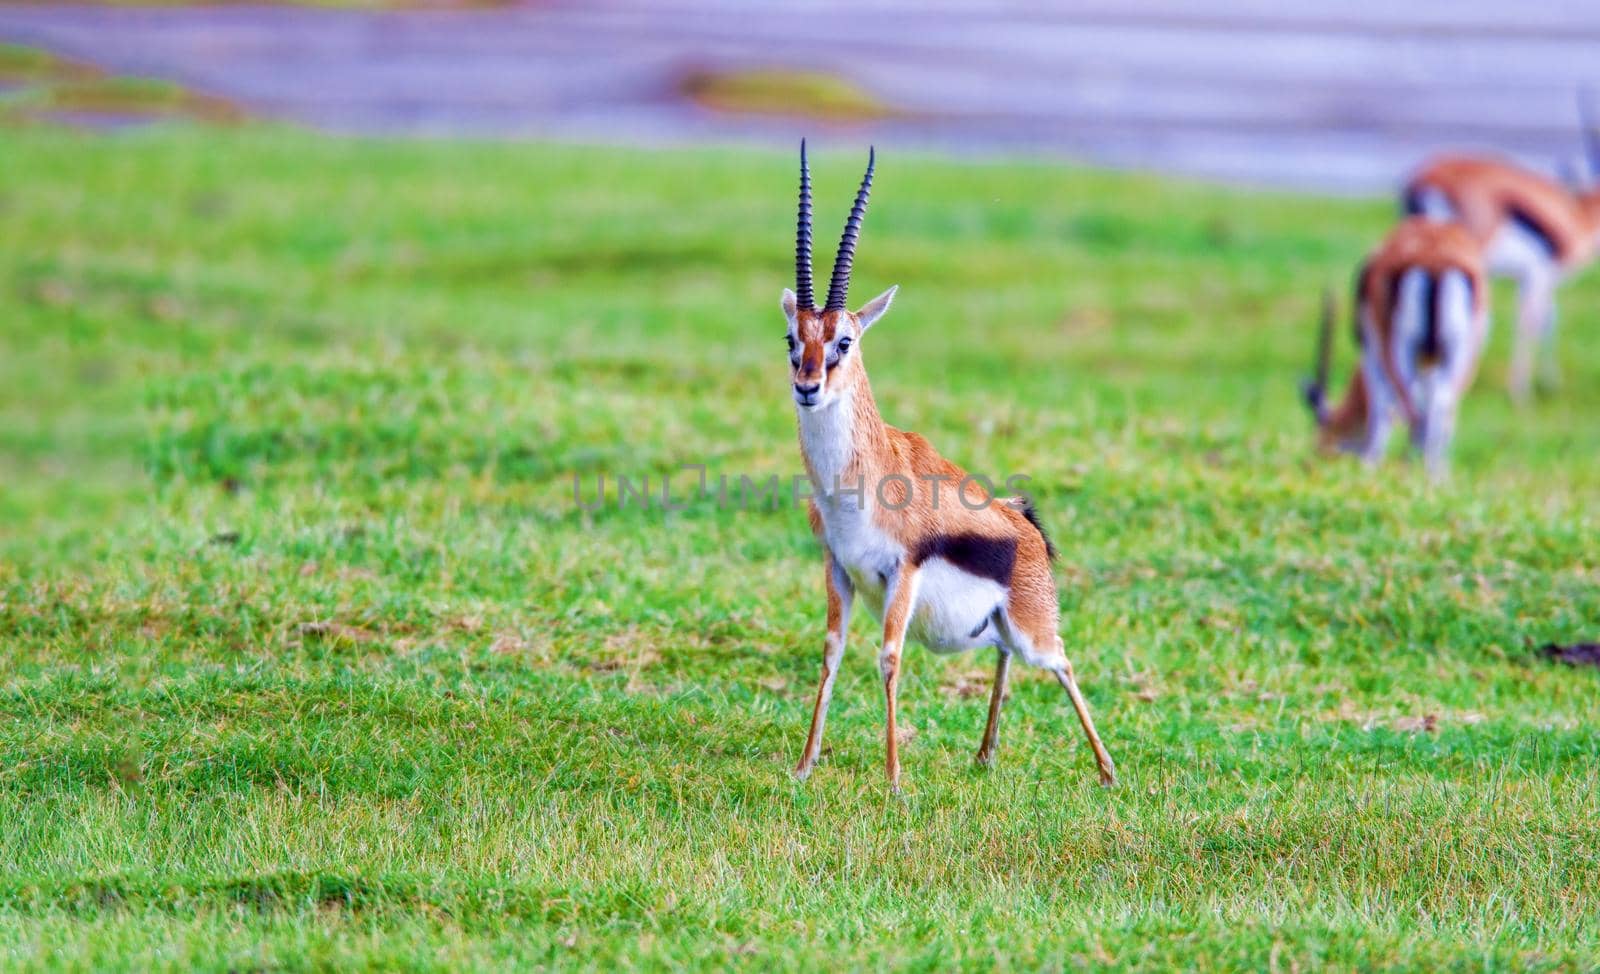 Kenya Wildlife, Tomashon's Gazelle or Tommy by kolesnikov_studio